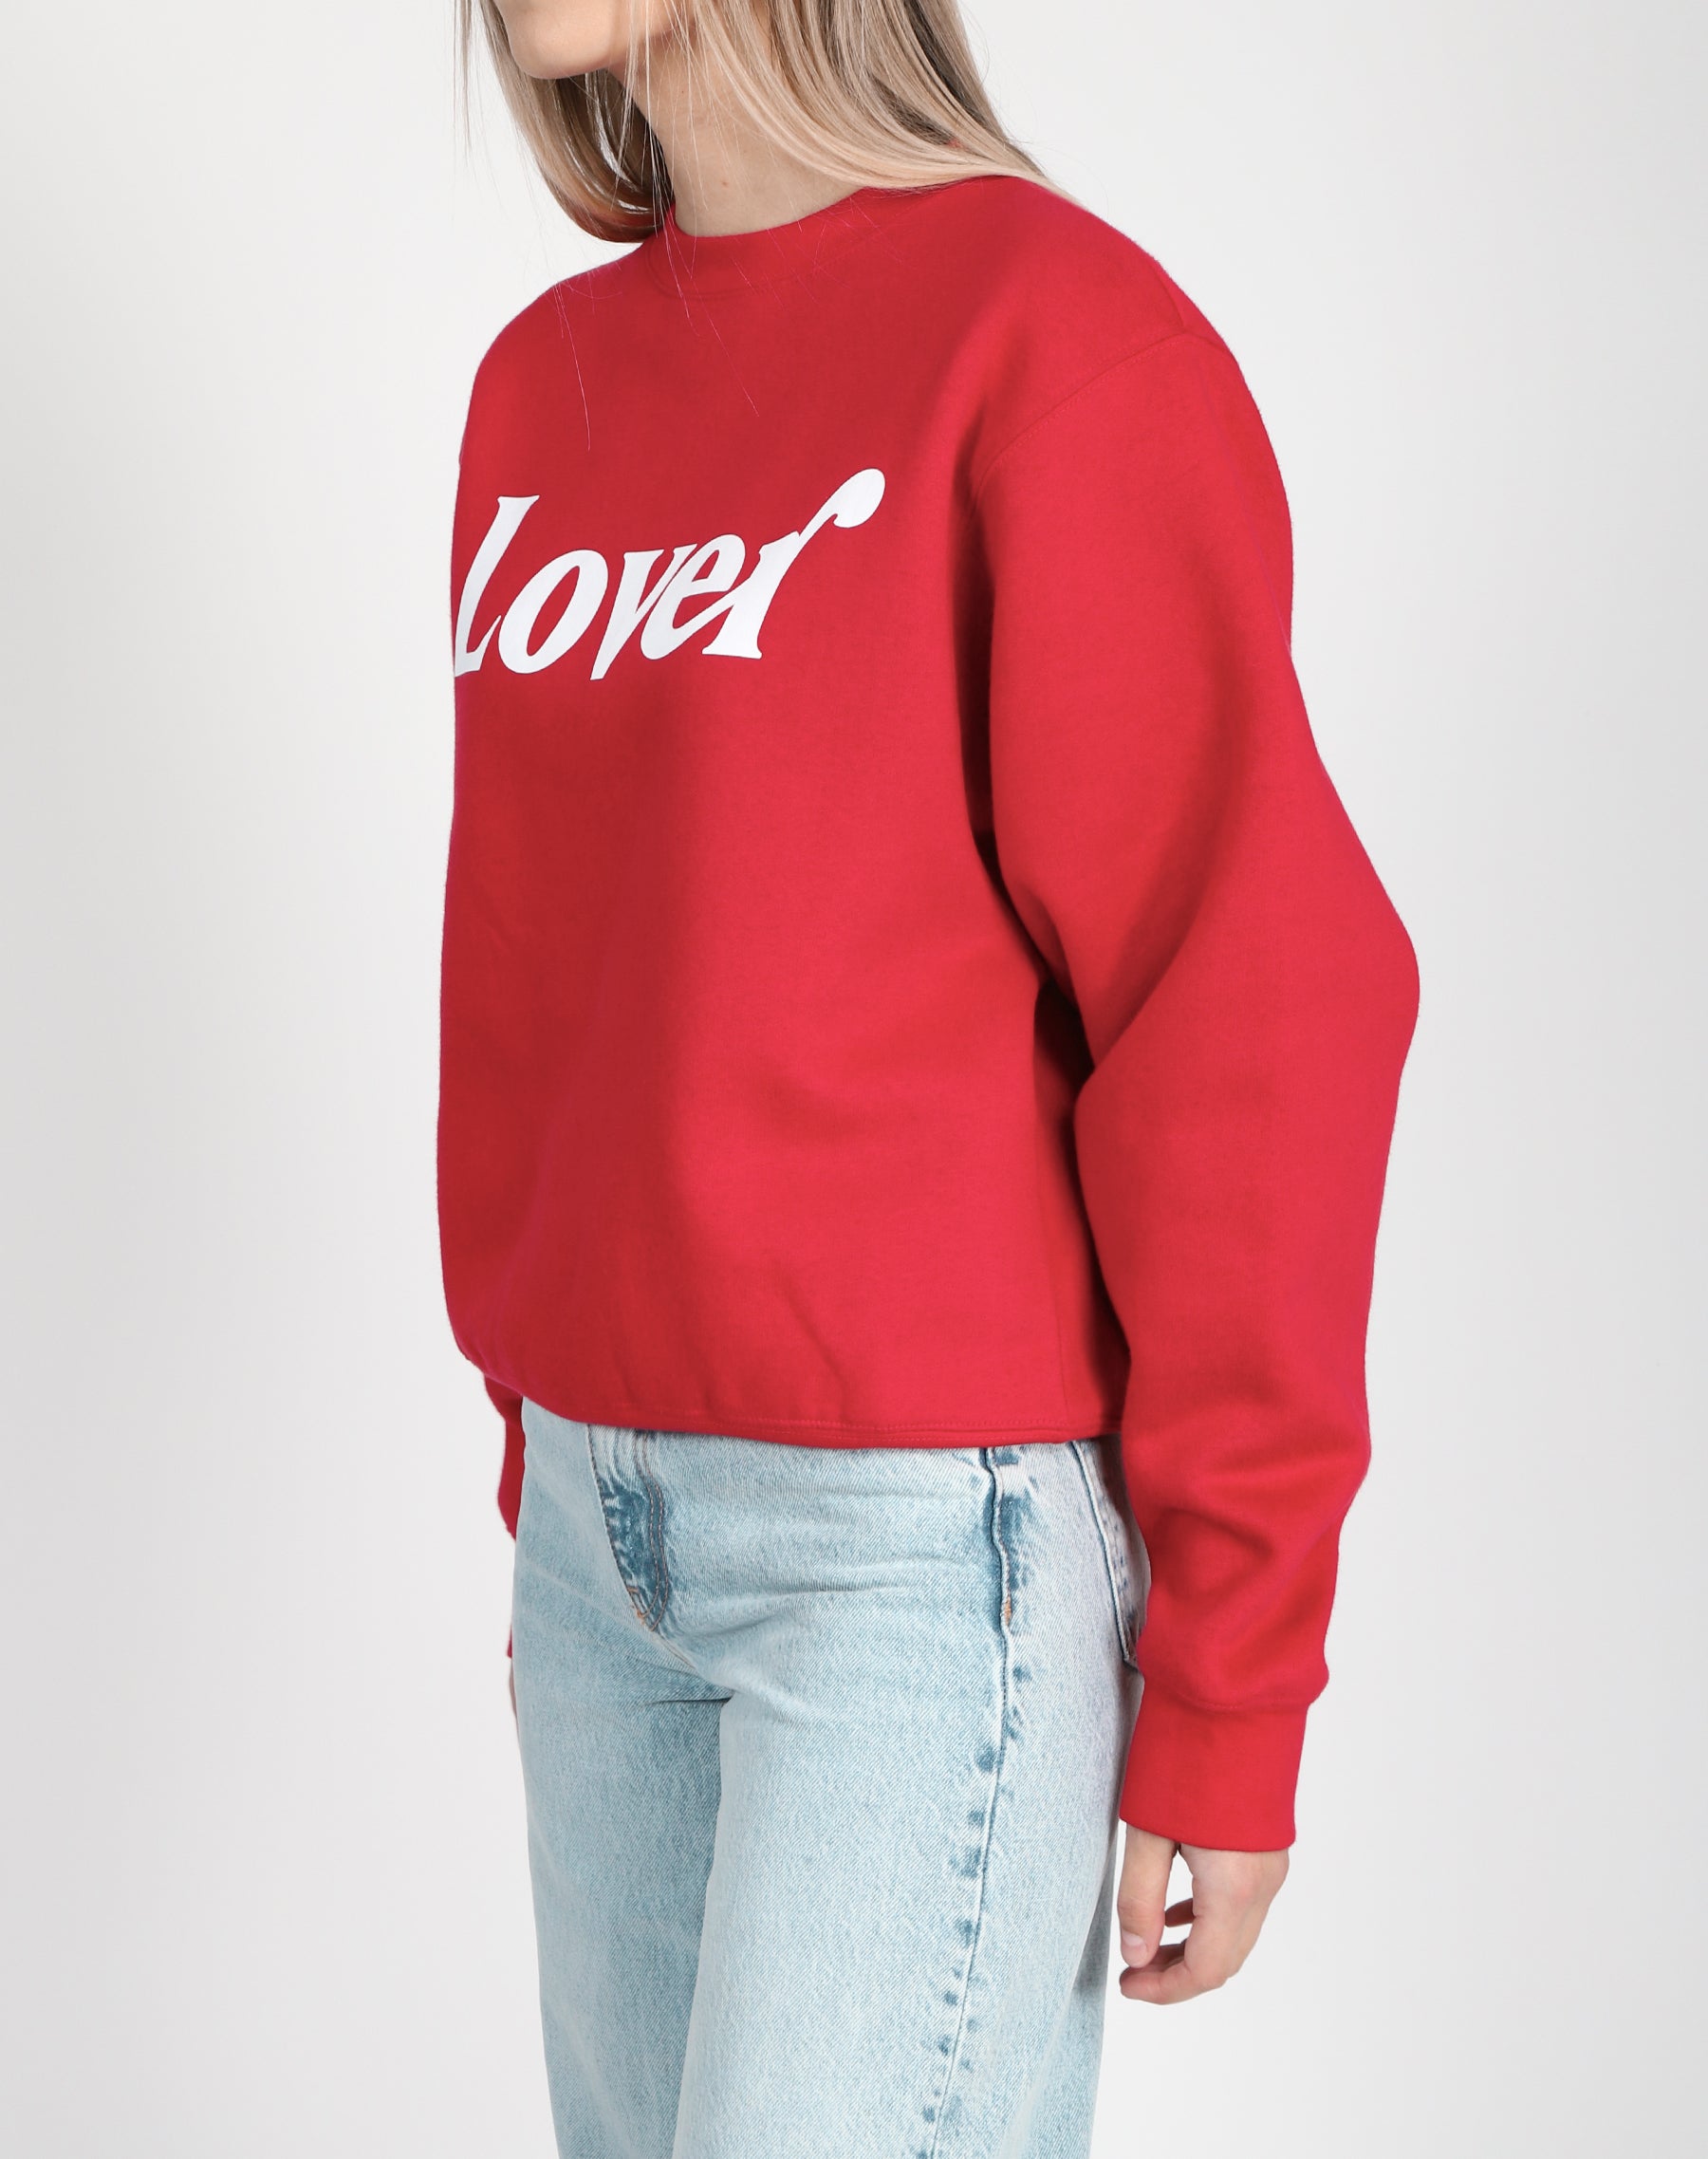 The "LOVER" Best Friend Crew Neck Sweatshirt | Crimson